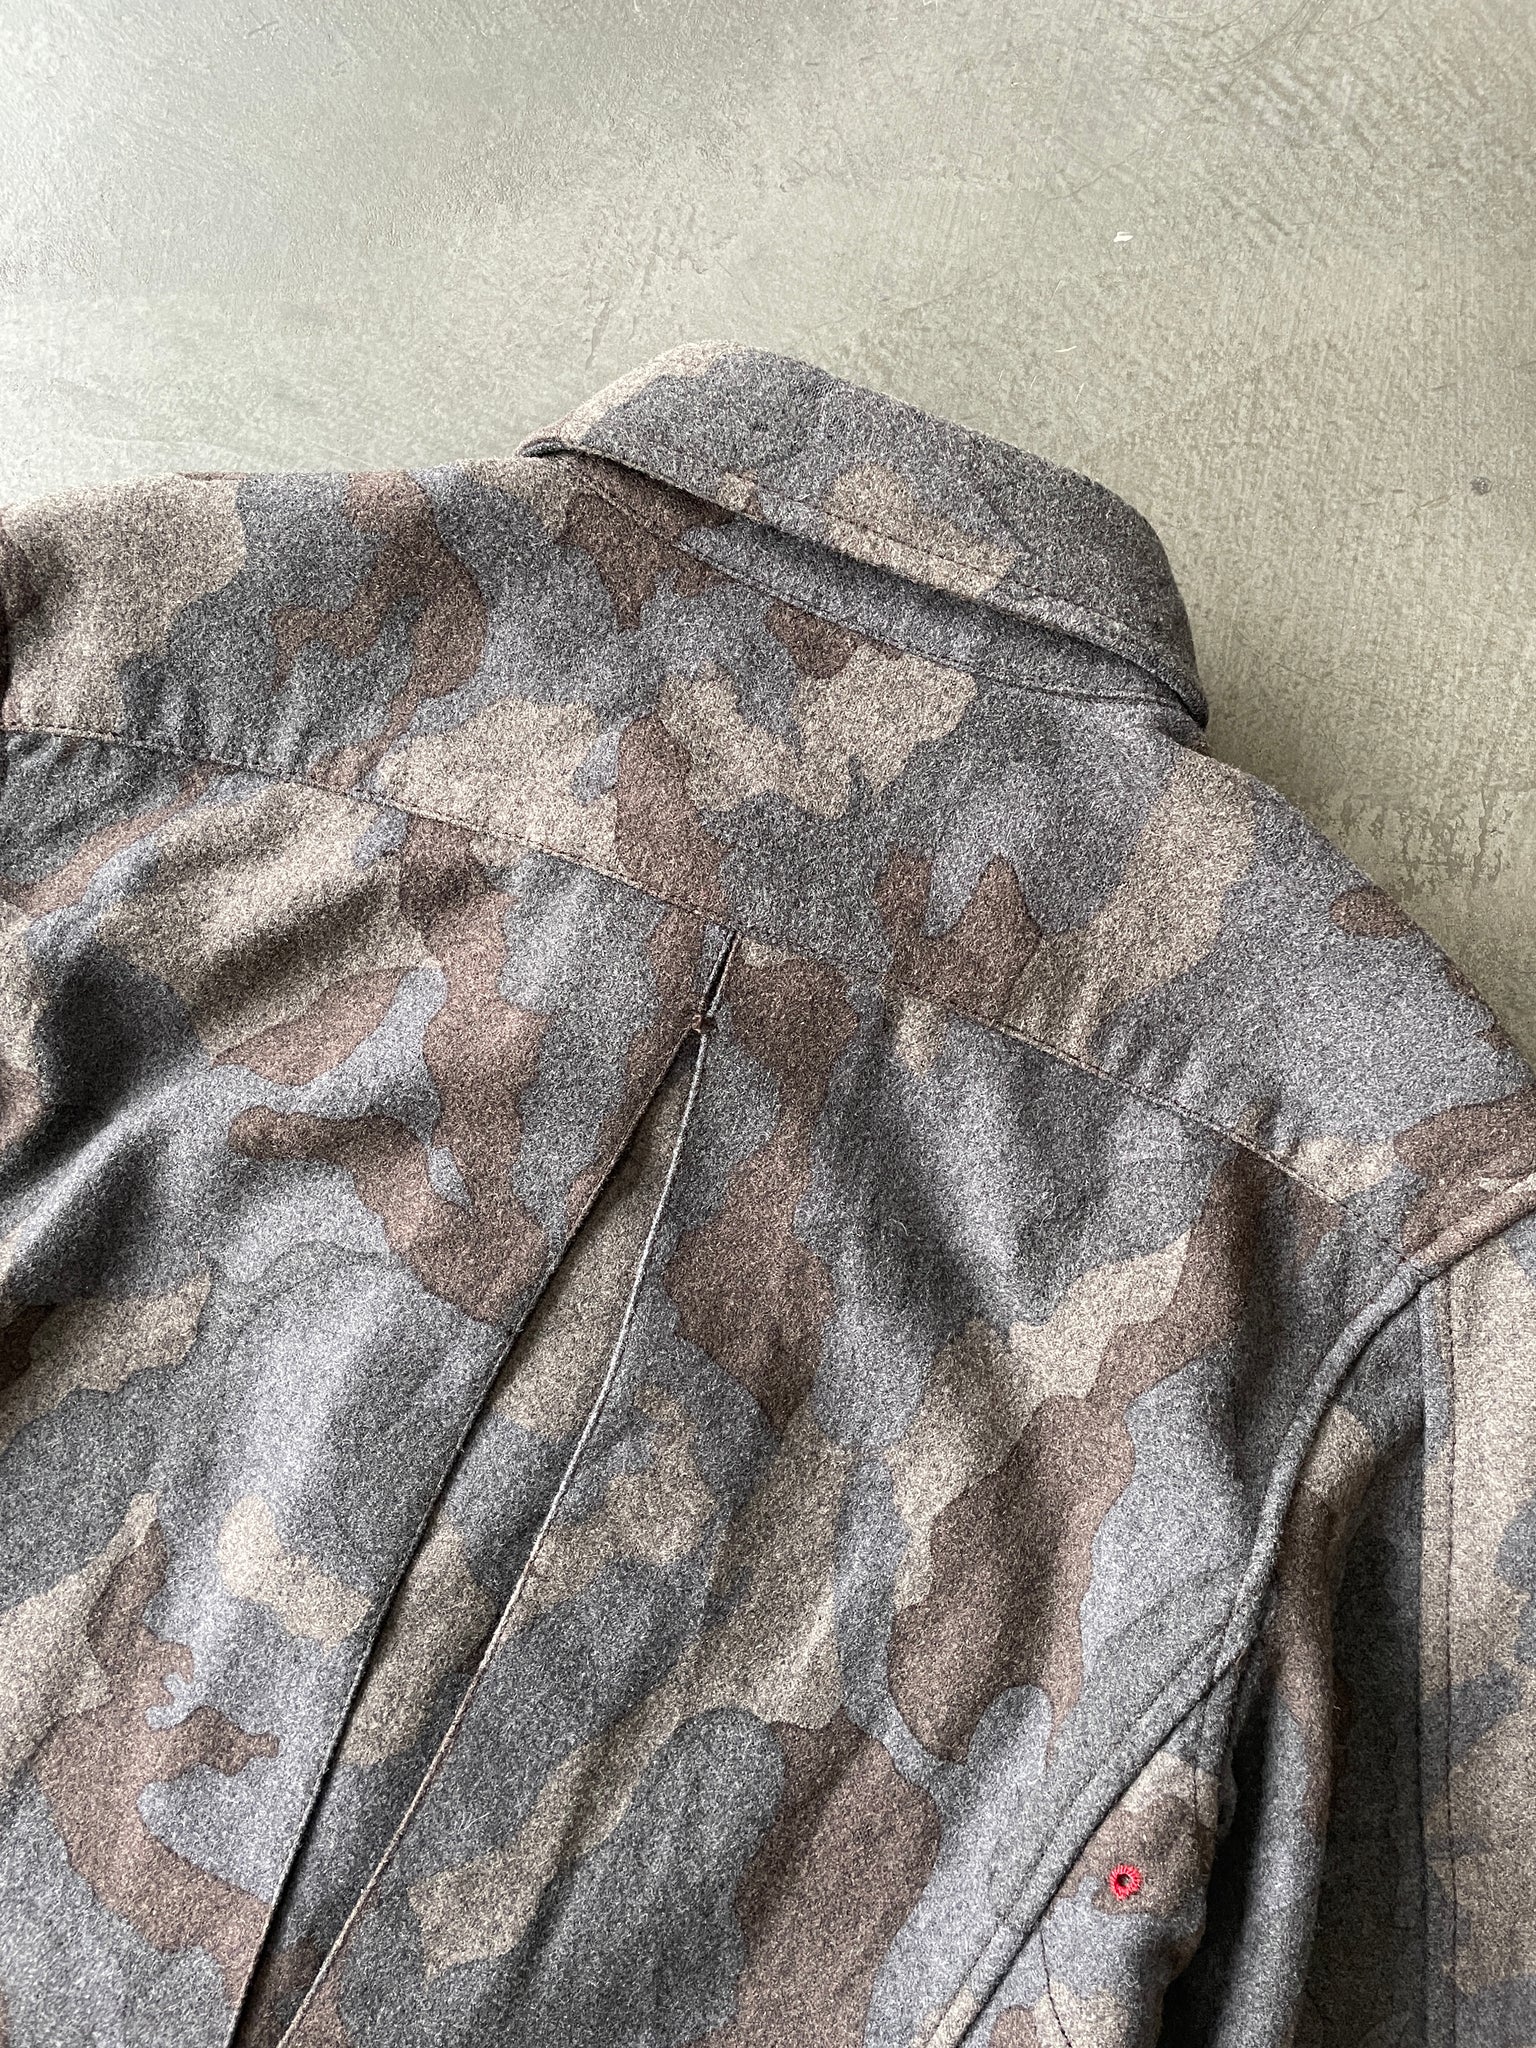 Military Camouflage Jacket